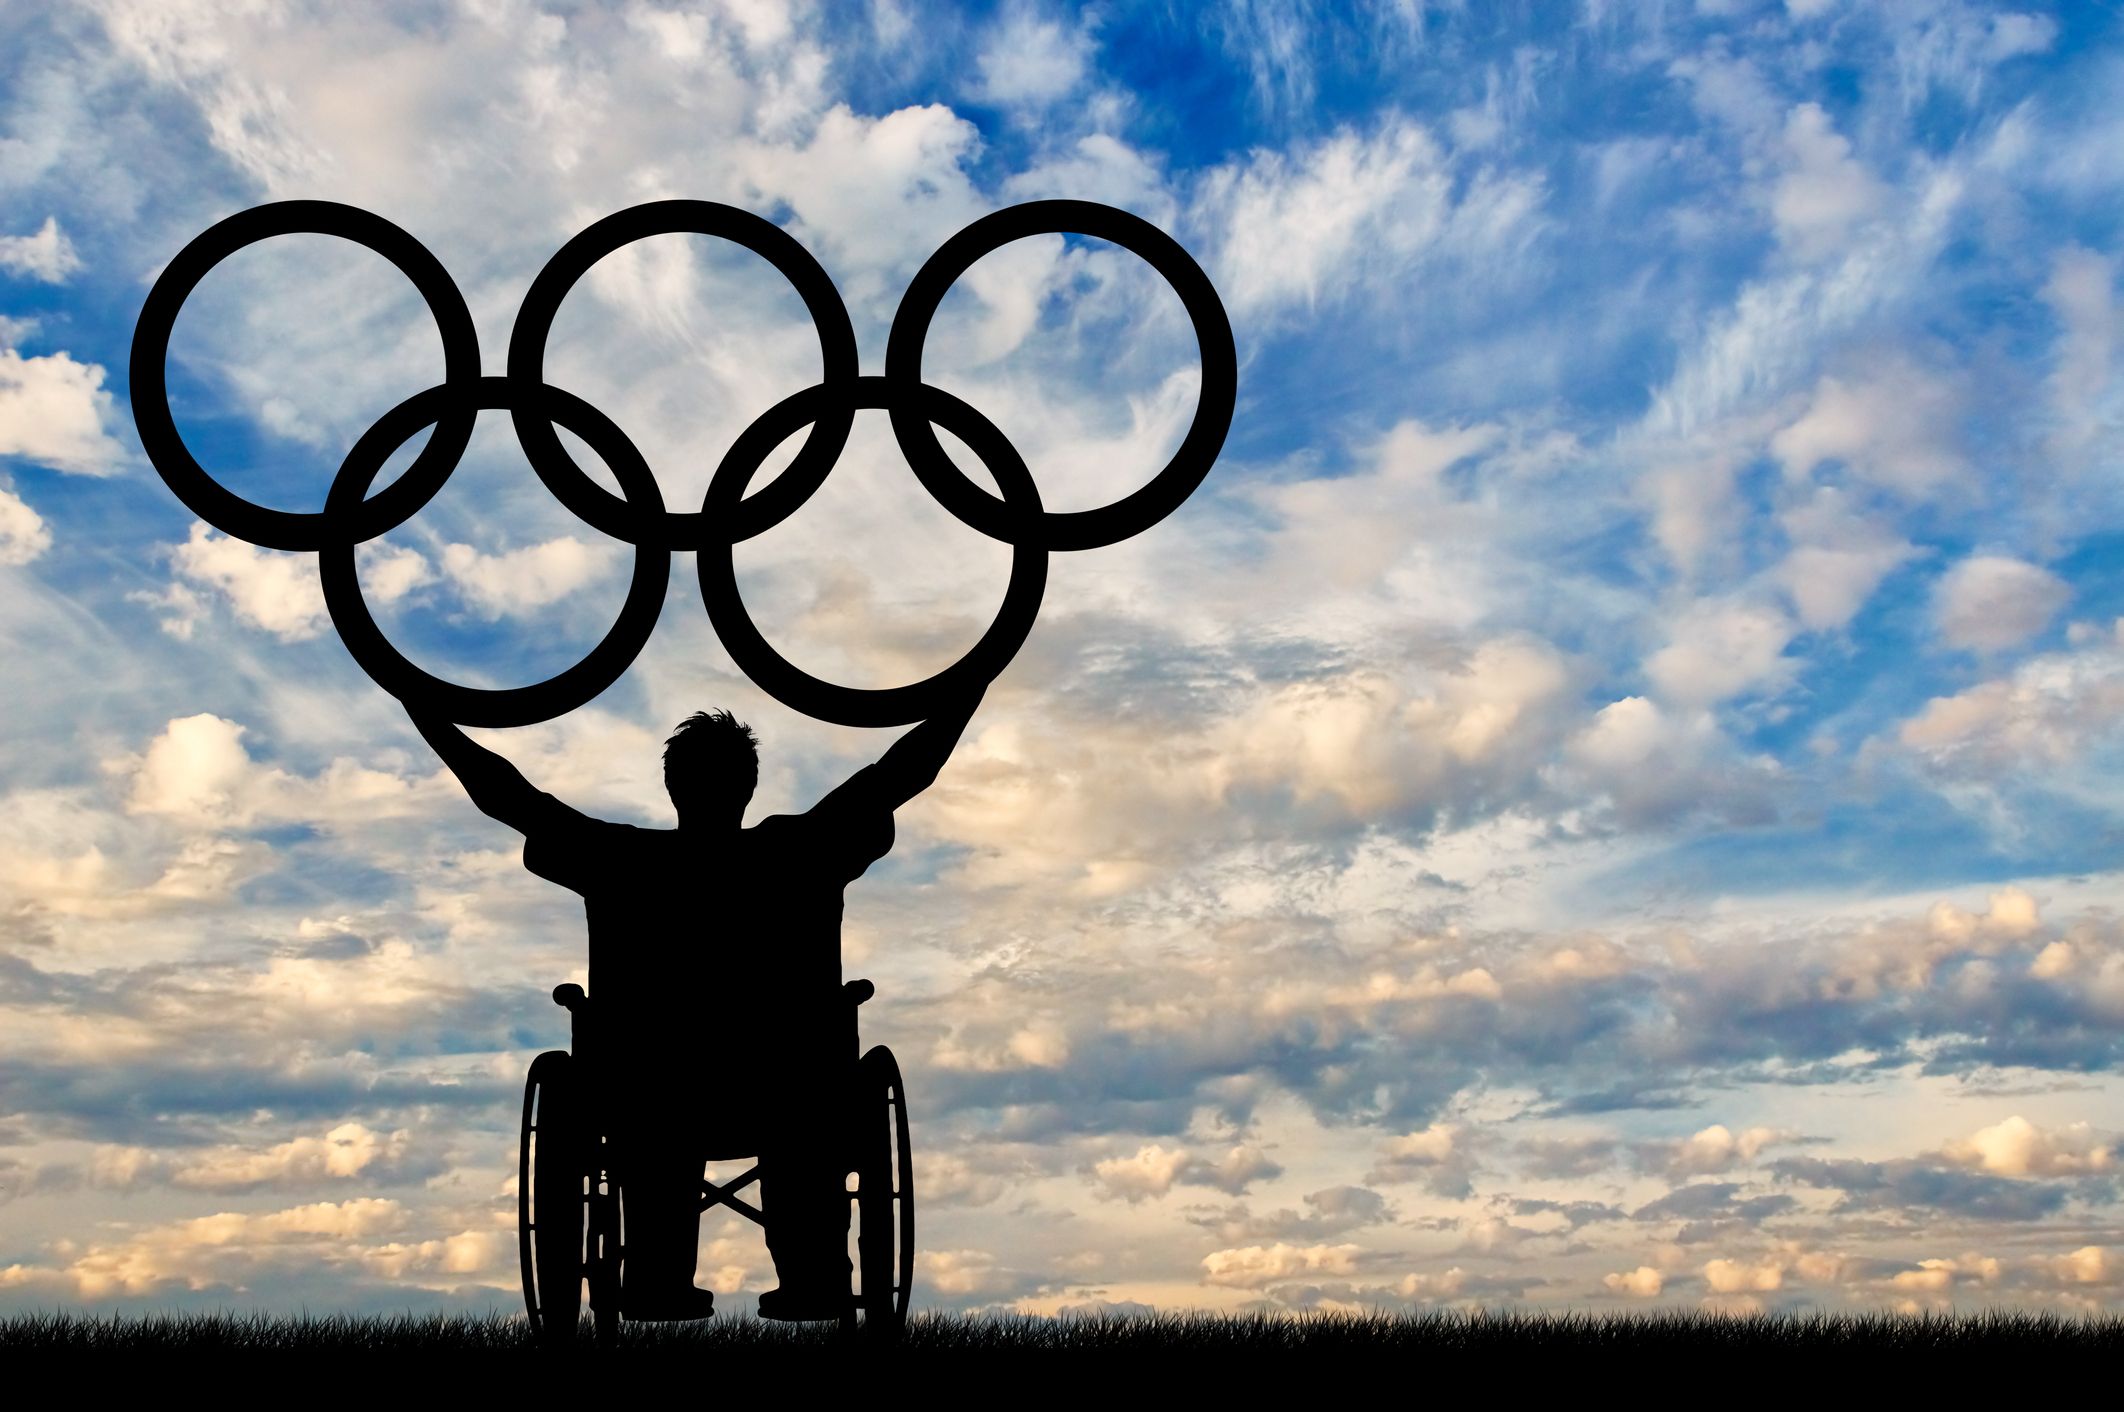 Calling Paralympians ‘Superhuman’